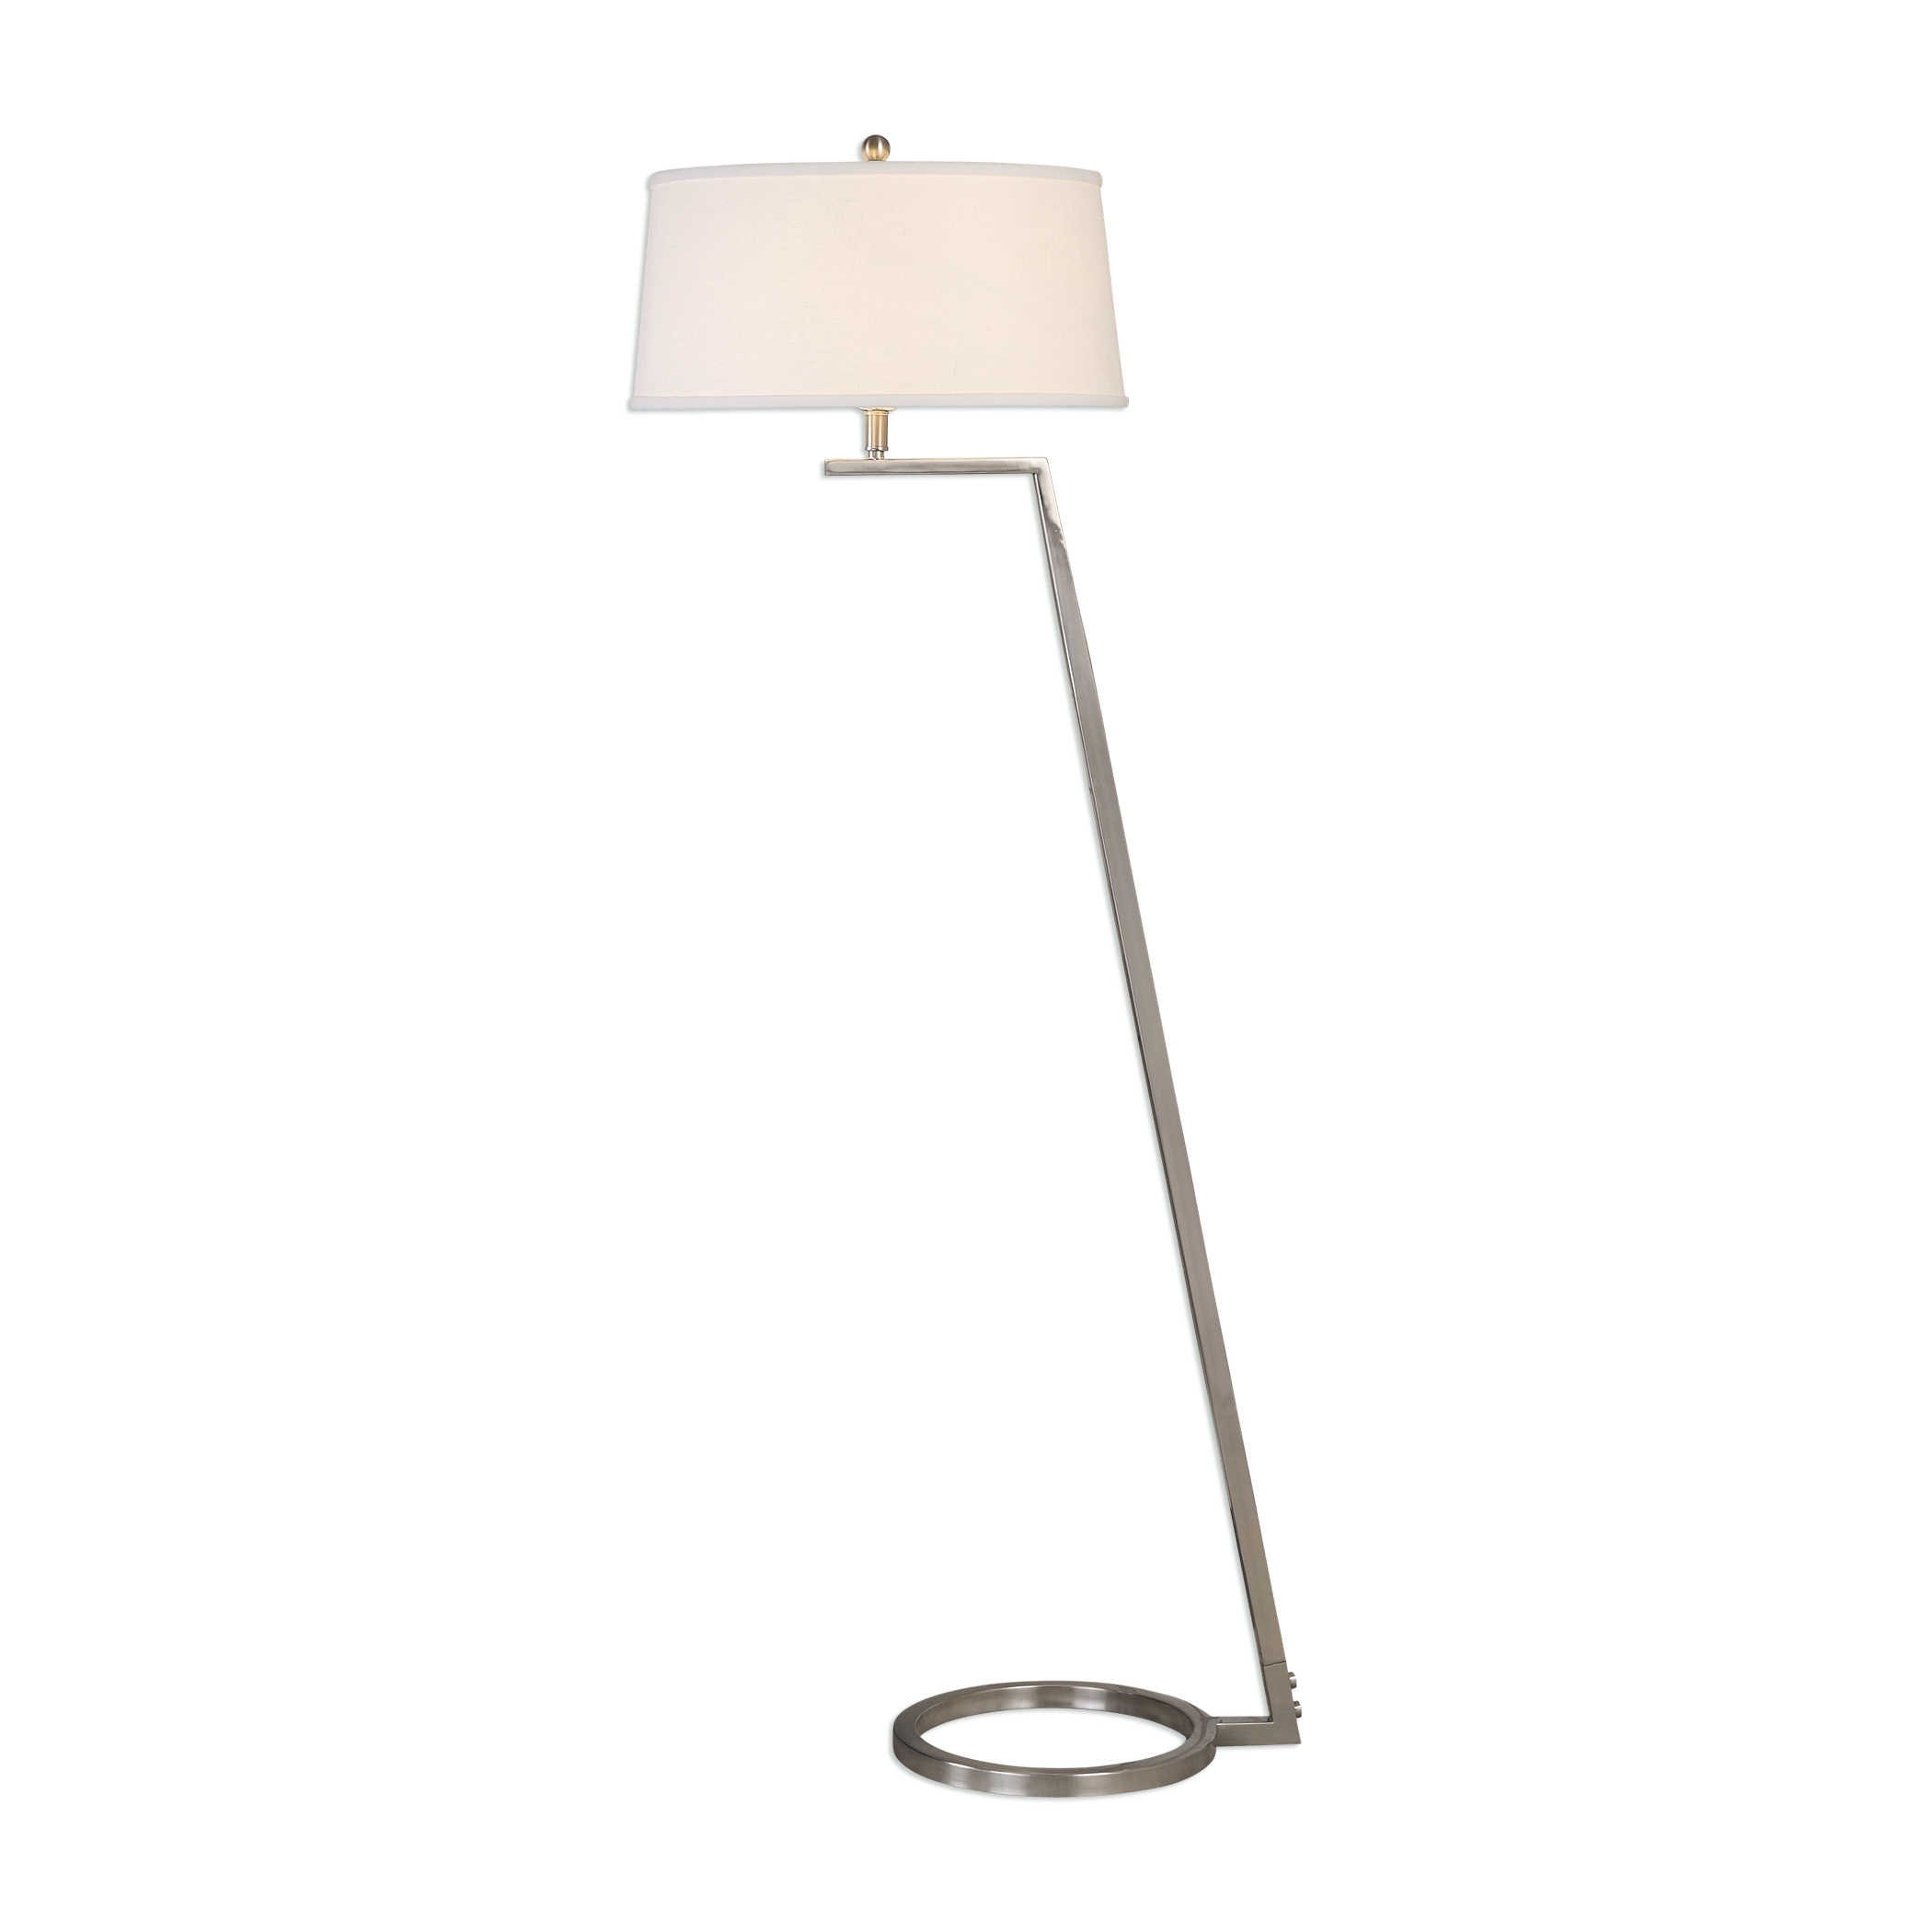 Ordino Modern Floor Lamp, Nickel, 63" - Image 0